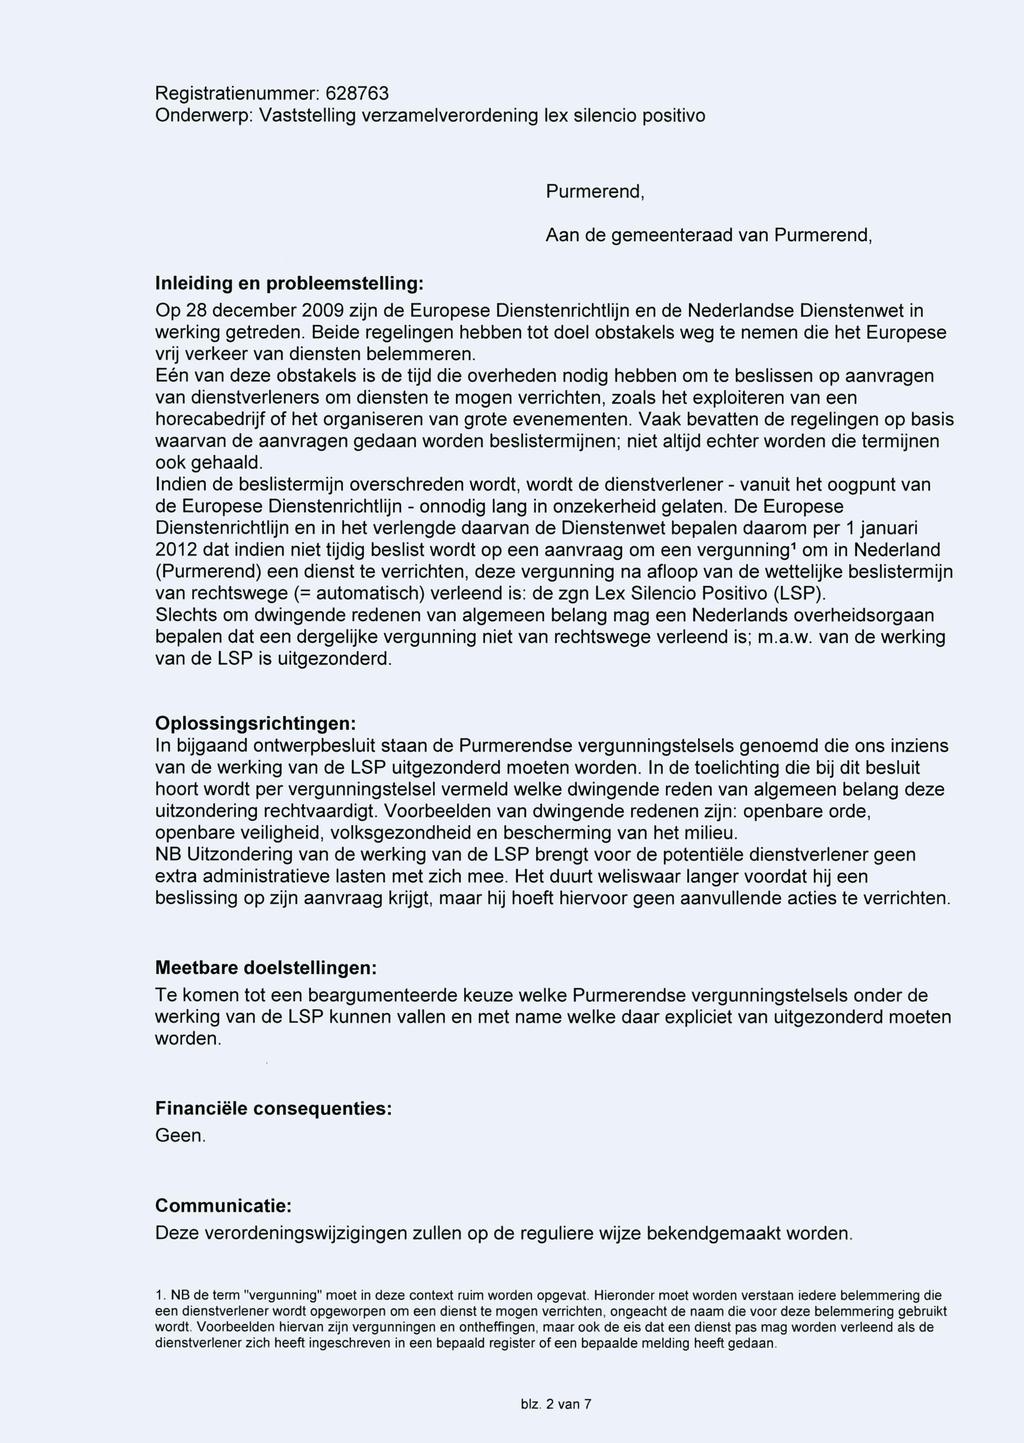 Purmerend, Aan de gemeenteraad van Purmerend, Inleiding en probleemstelling: Op 28 december 2009 zijn de Europese Dienstenrichtlijn en de Nederlandse Dienstenwet in werking getreden.